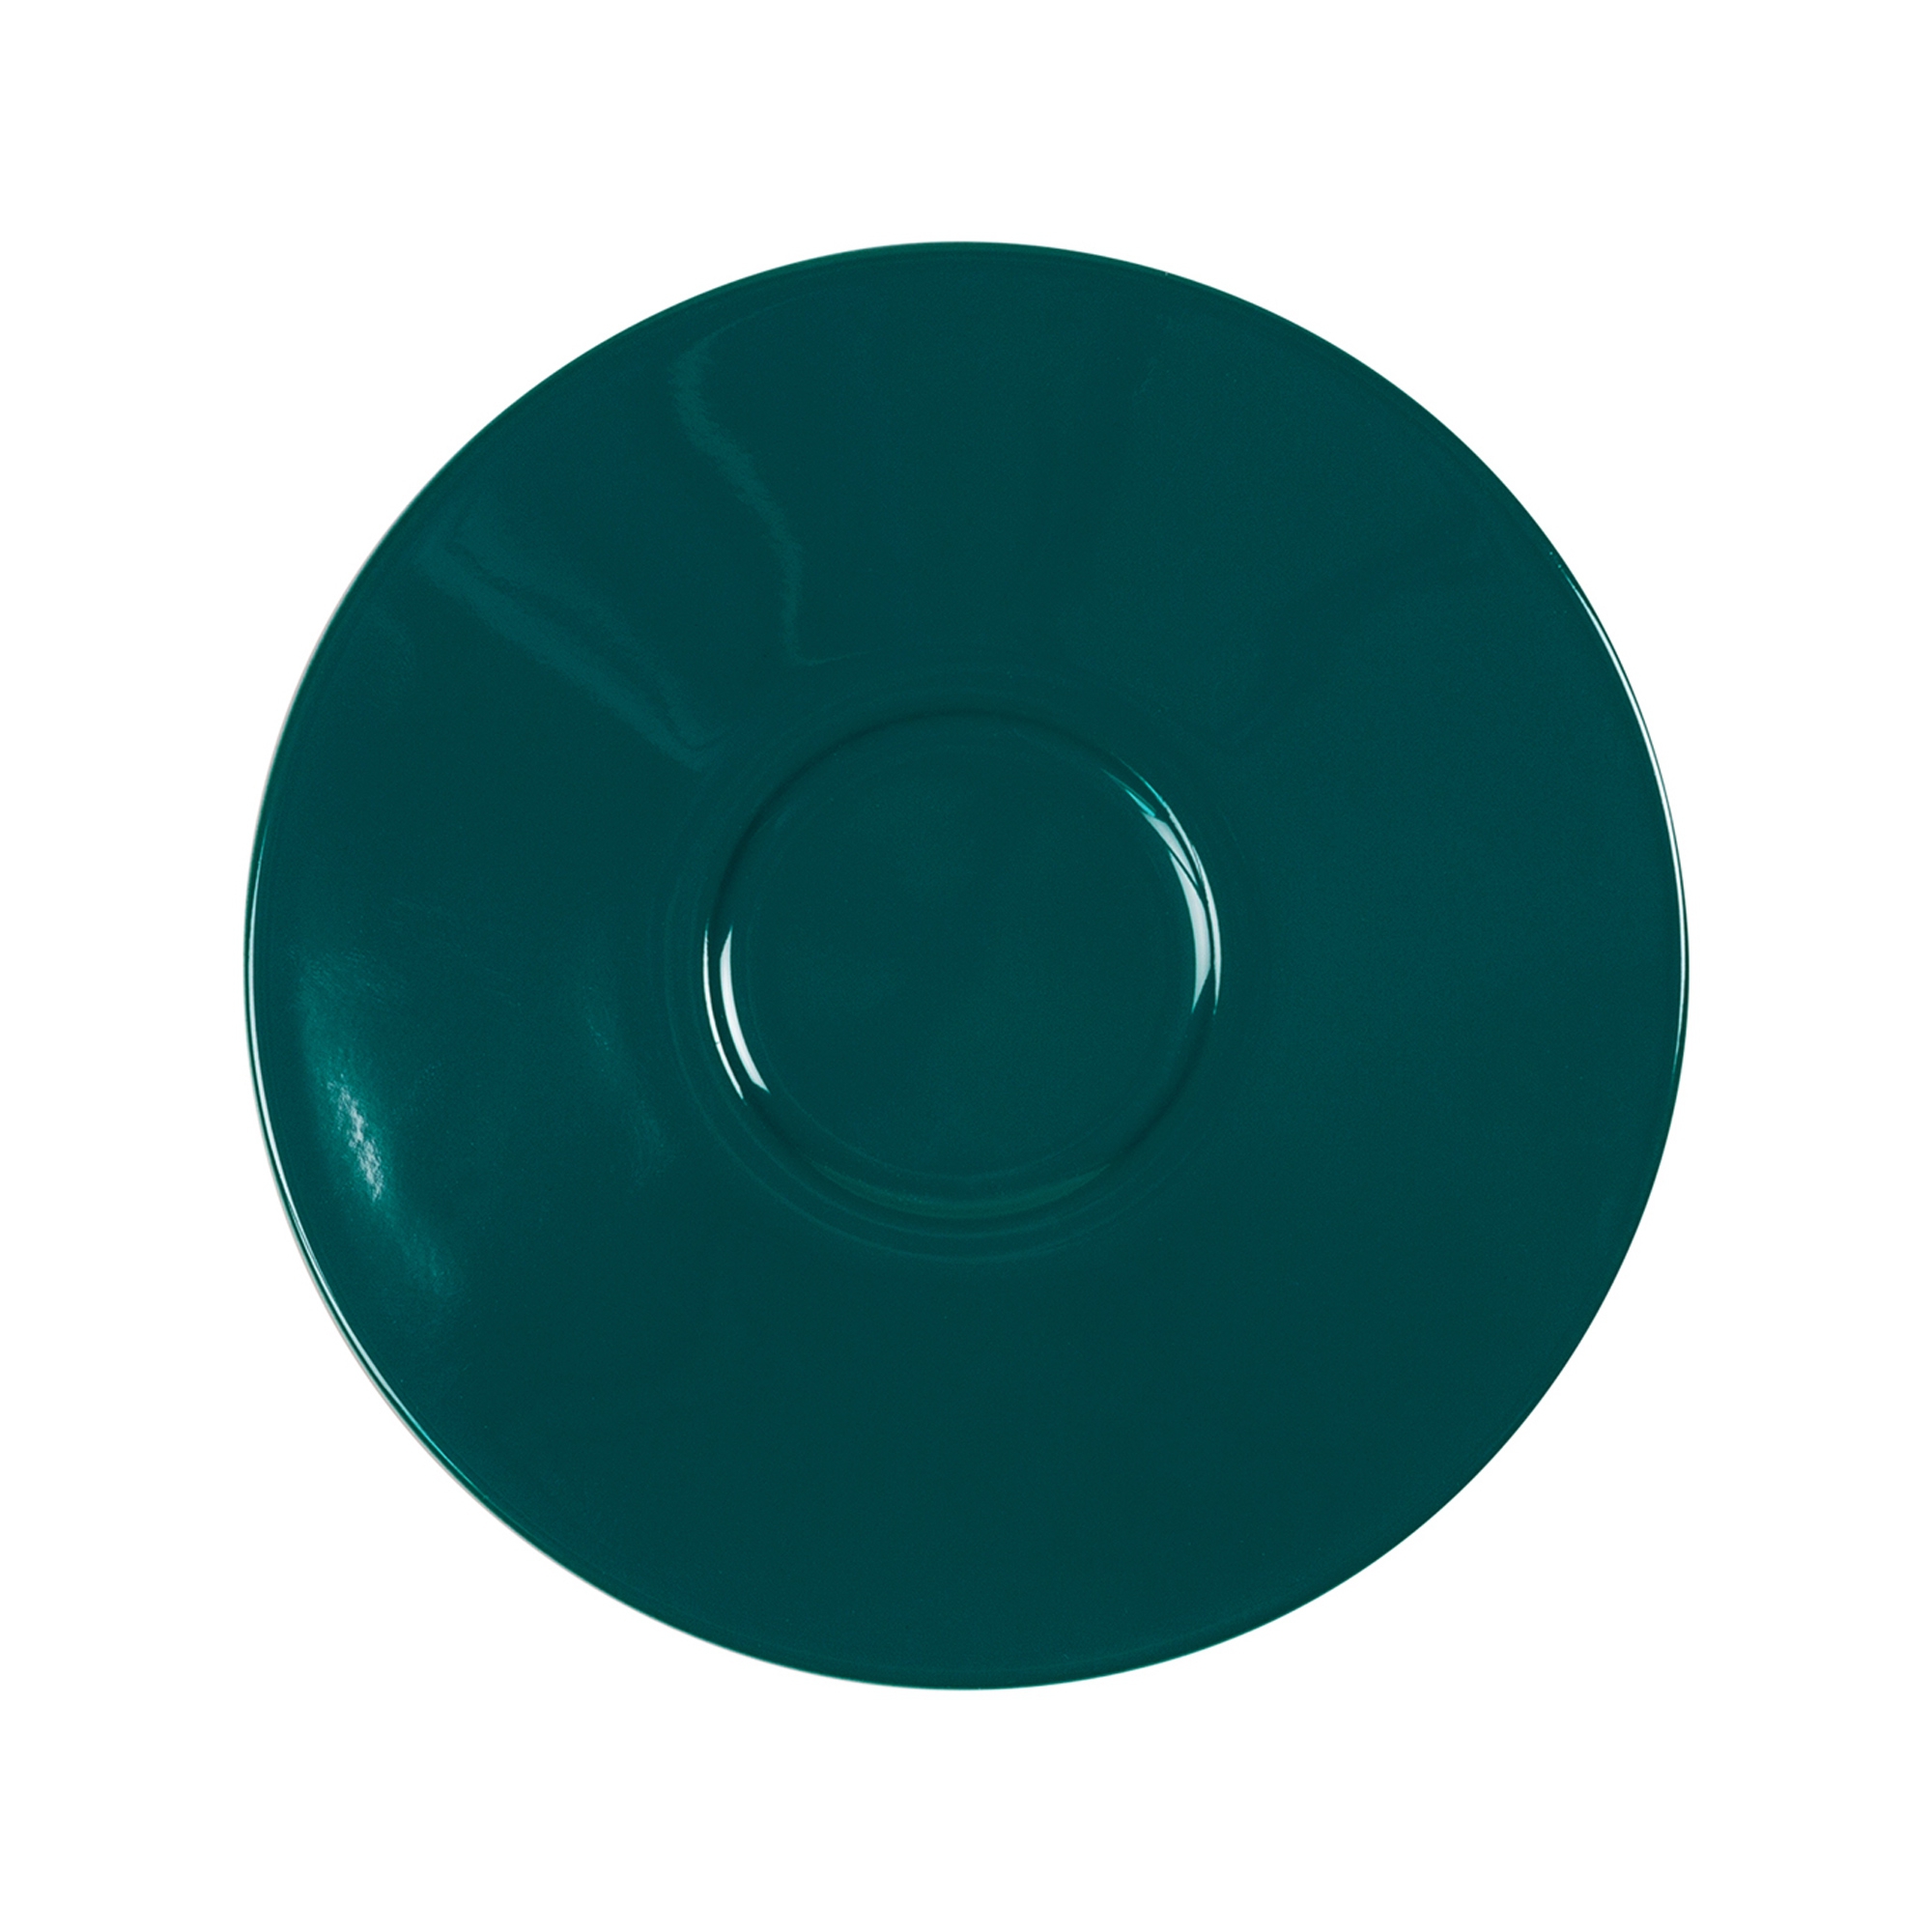 Eschenbach - saucer 14.5 cm - turquoise green